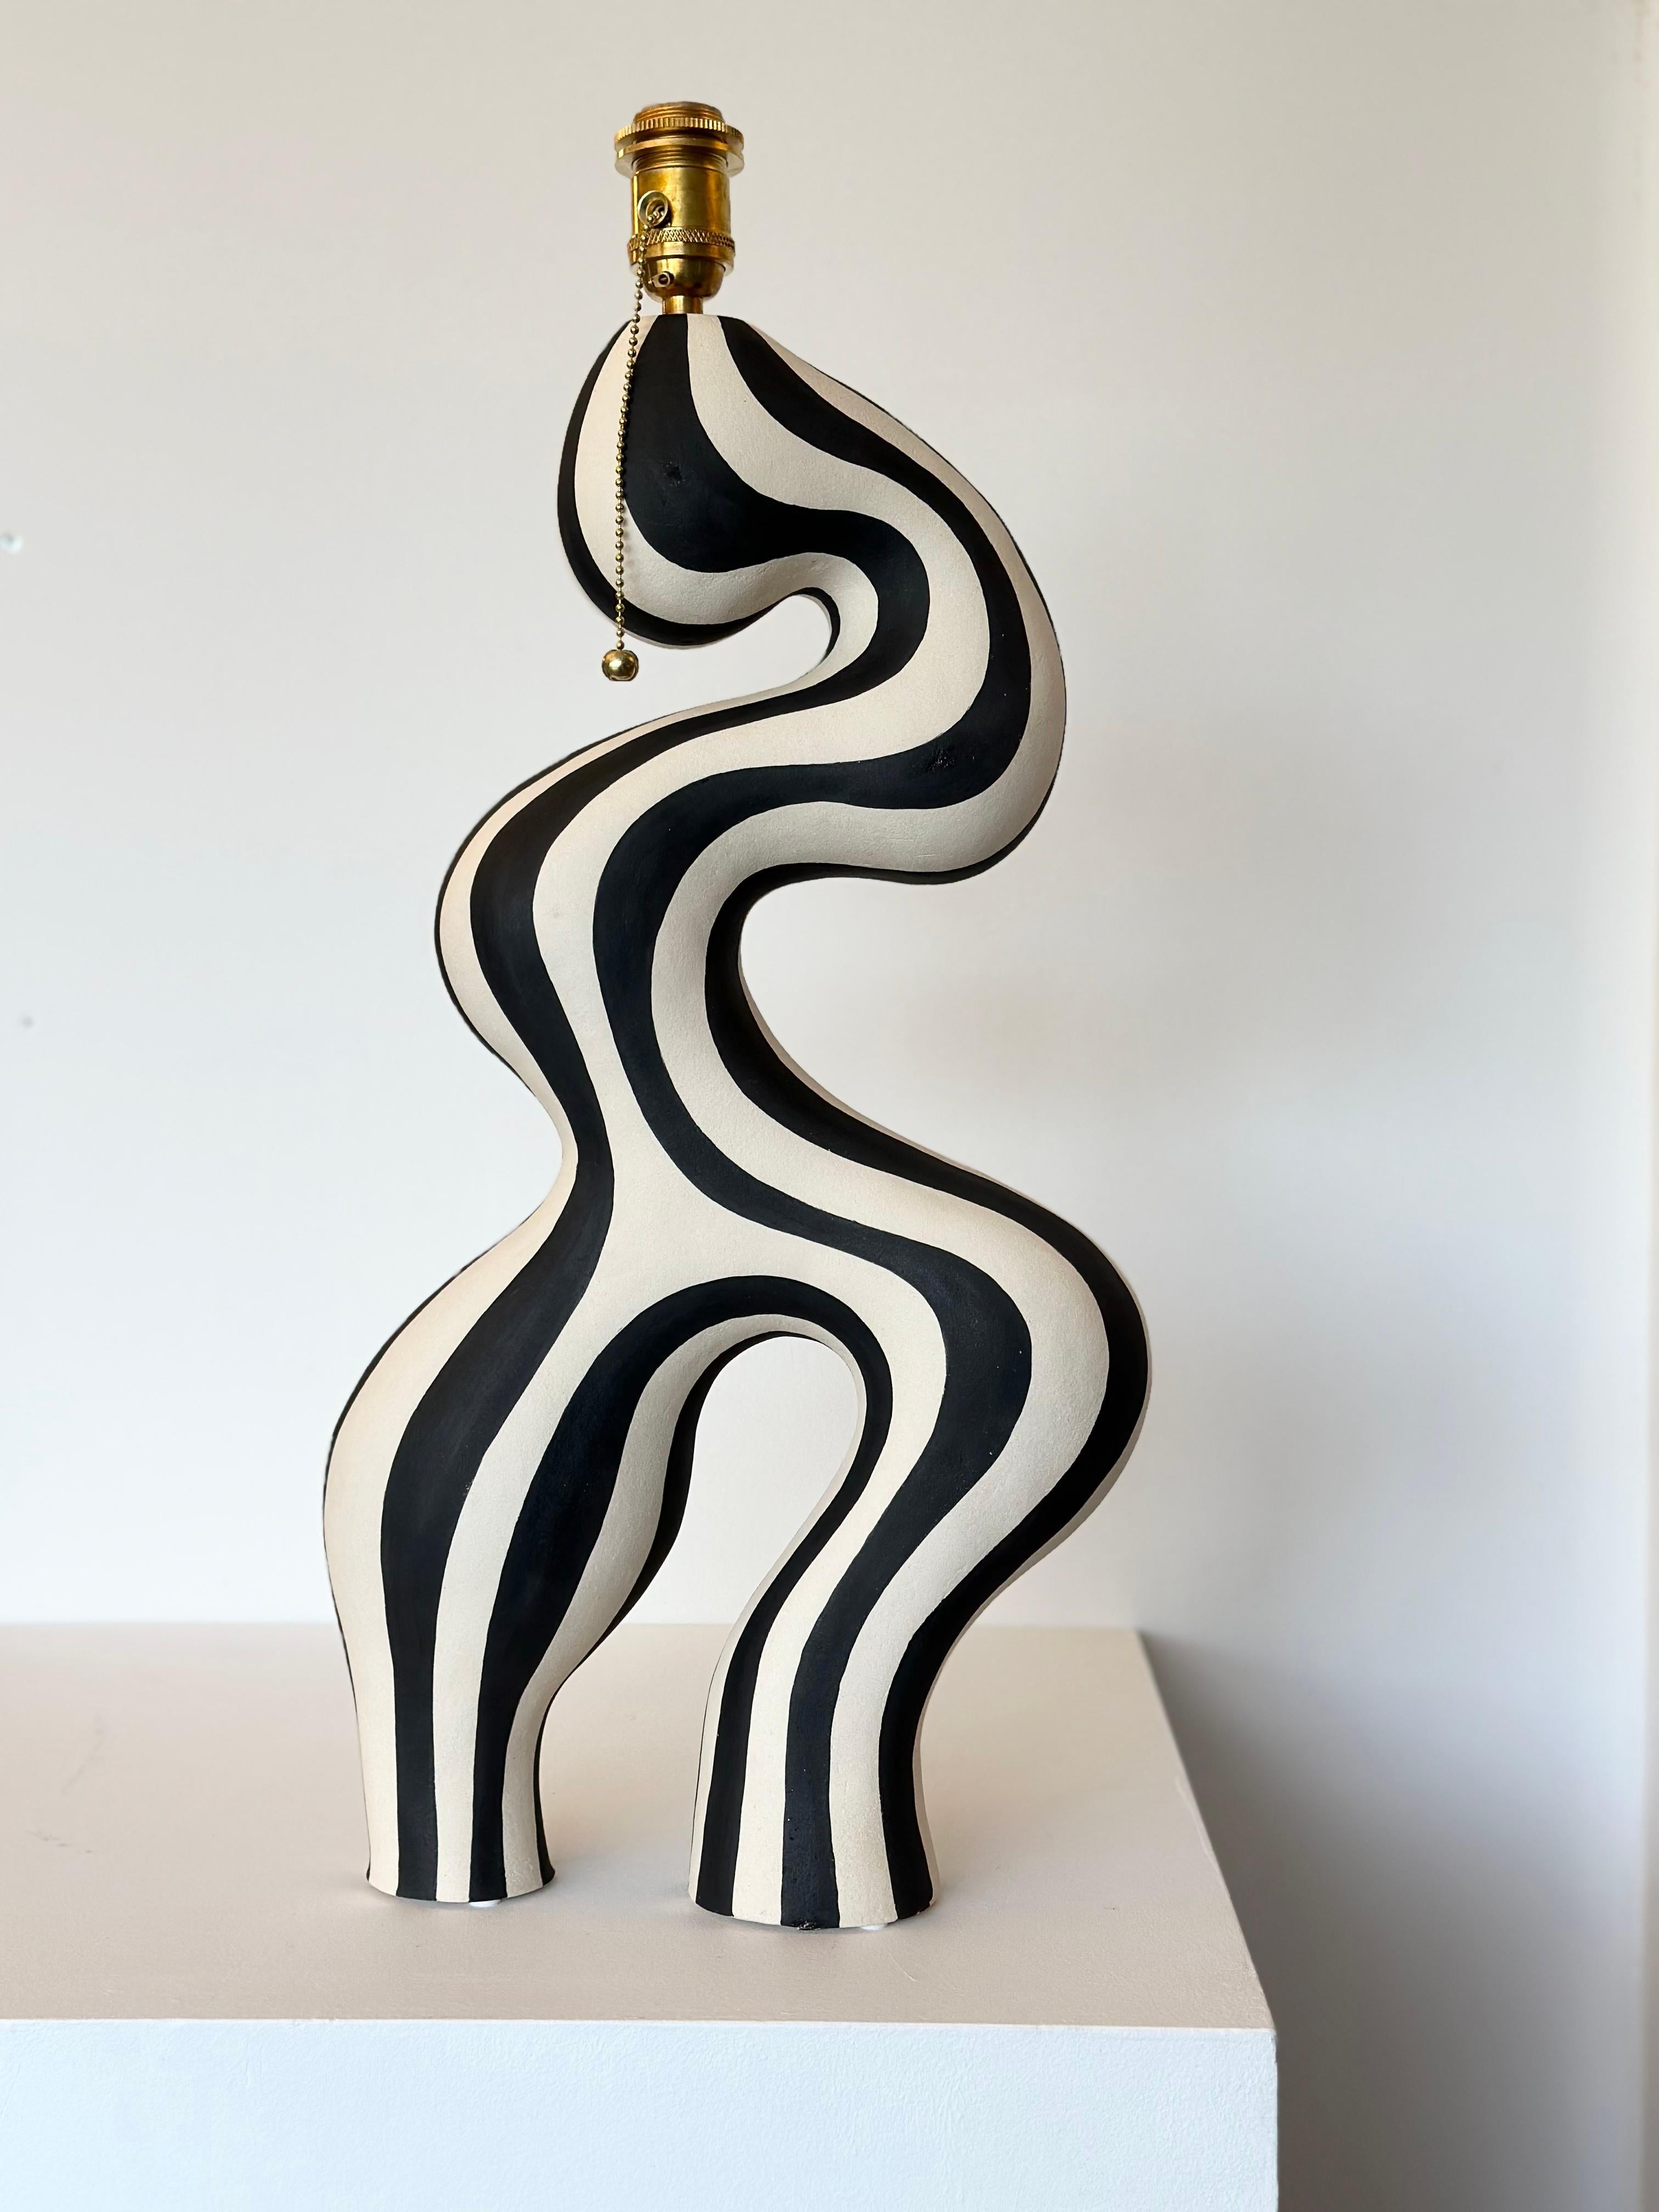 Ein von der Keramikkünstlerin Johanne Birkeland, die unter dem Künstlernamen Jossolini arbeitet, entworfenes und handgefertigtes Kunstwerk. Der Lampensockel ist aus weißem Steinzeugton handgefertigt und mit schwarzer, matter Glasur verziert. 

Die